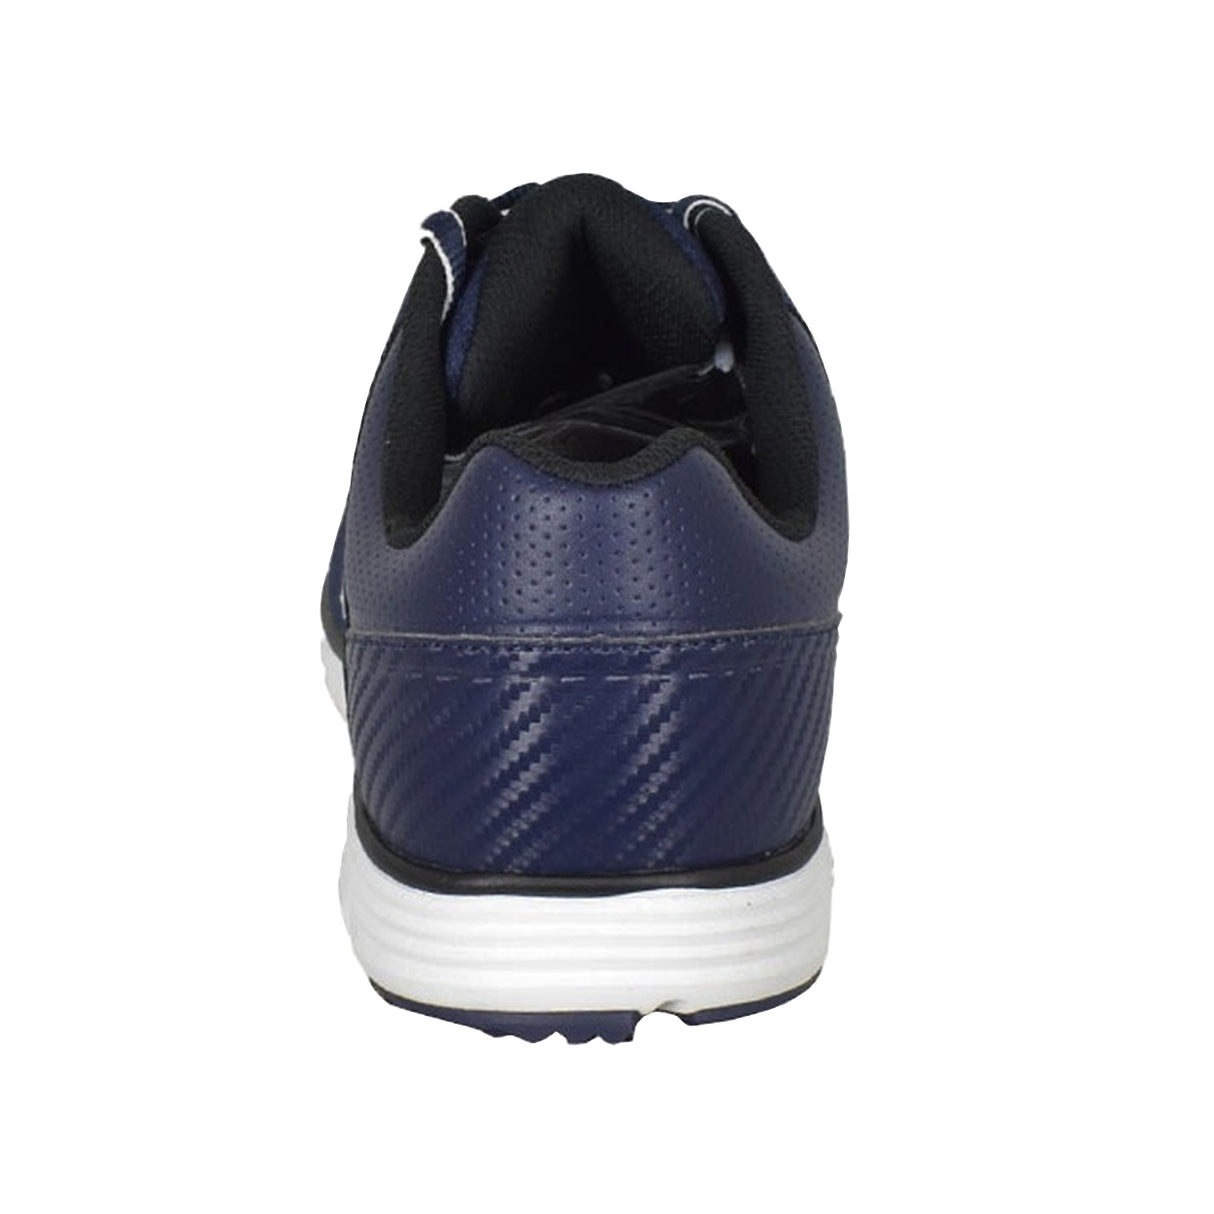 Etonic Men's Stabilite Sport Spikeless Waterproof Golf Shoes